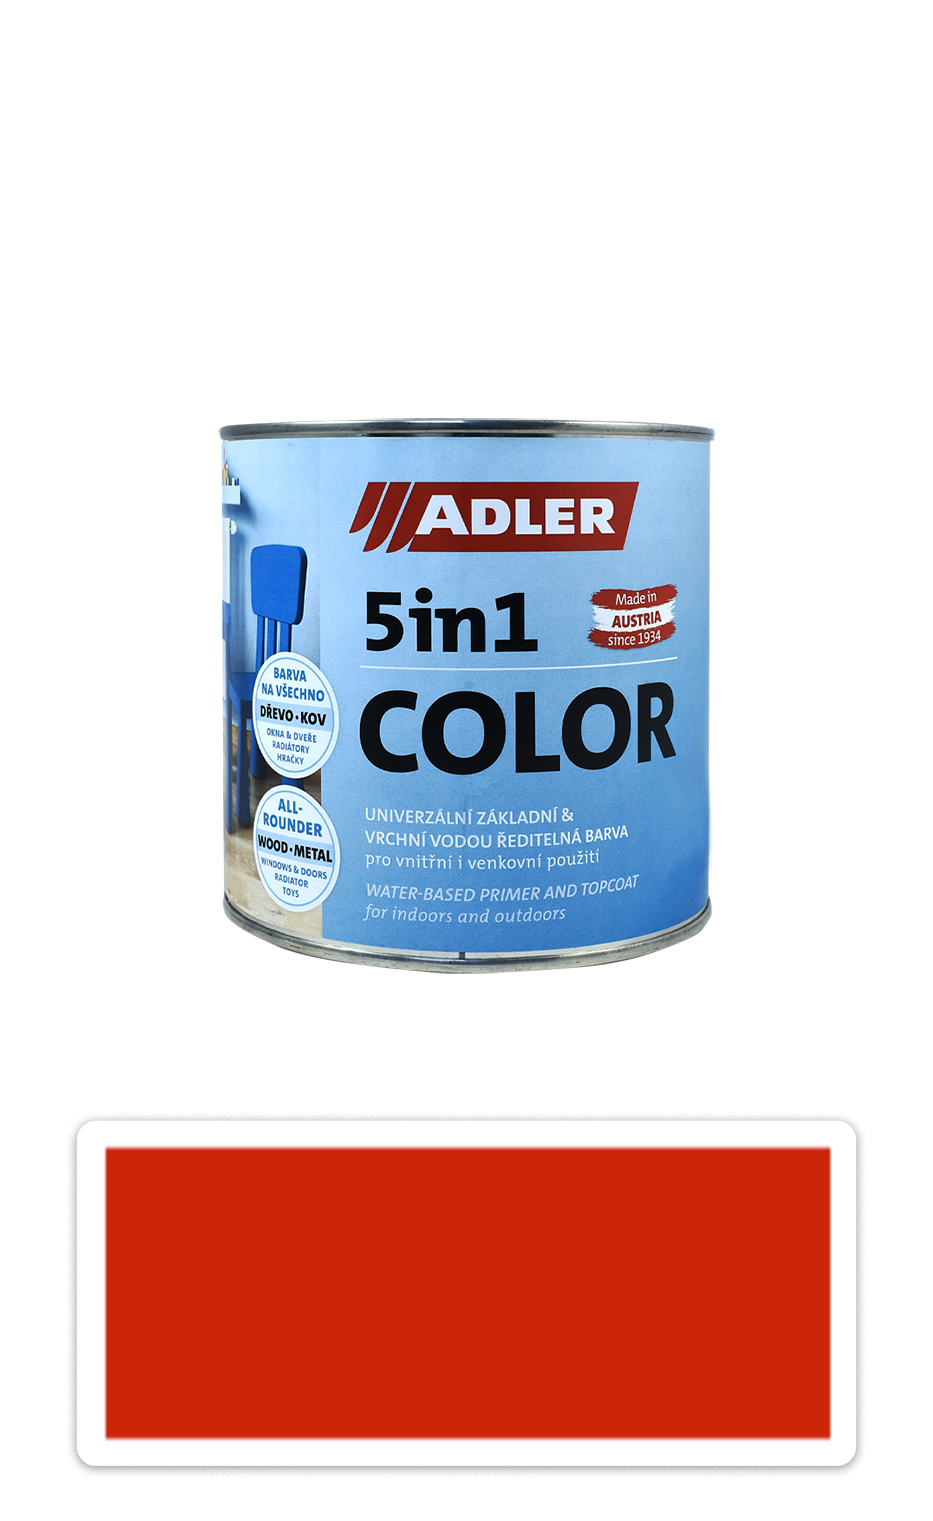 ADLER 5in1 Color - univerzálna vodou riediteľná farba 0.75 l Verkehrsrot / Dopravná červená RAL 3020